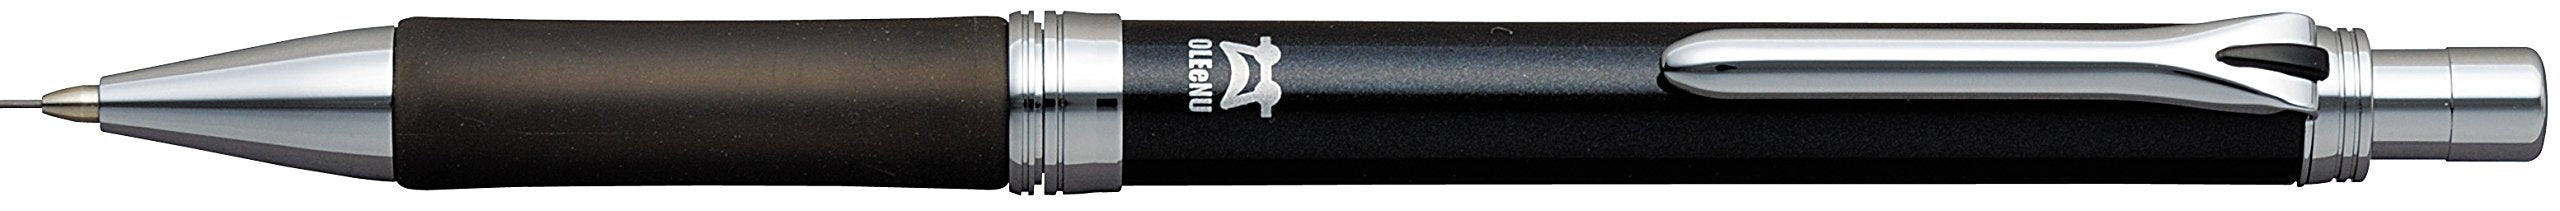 鉑金鋼筆 - 黑色礦石機械筆型號 MOL-1000#1